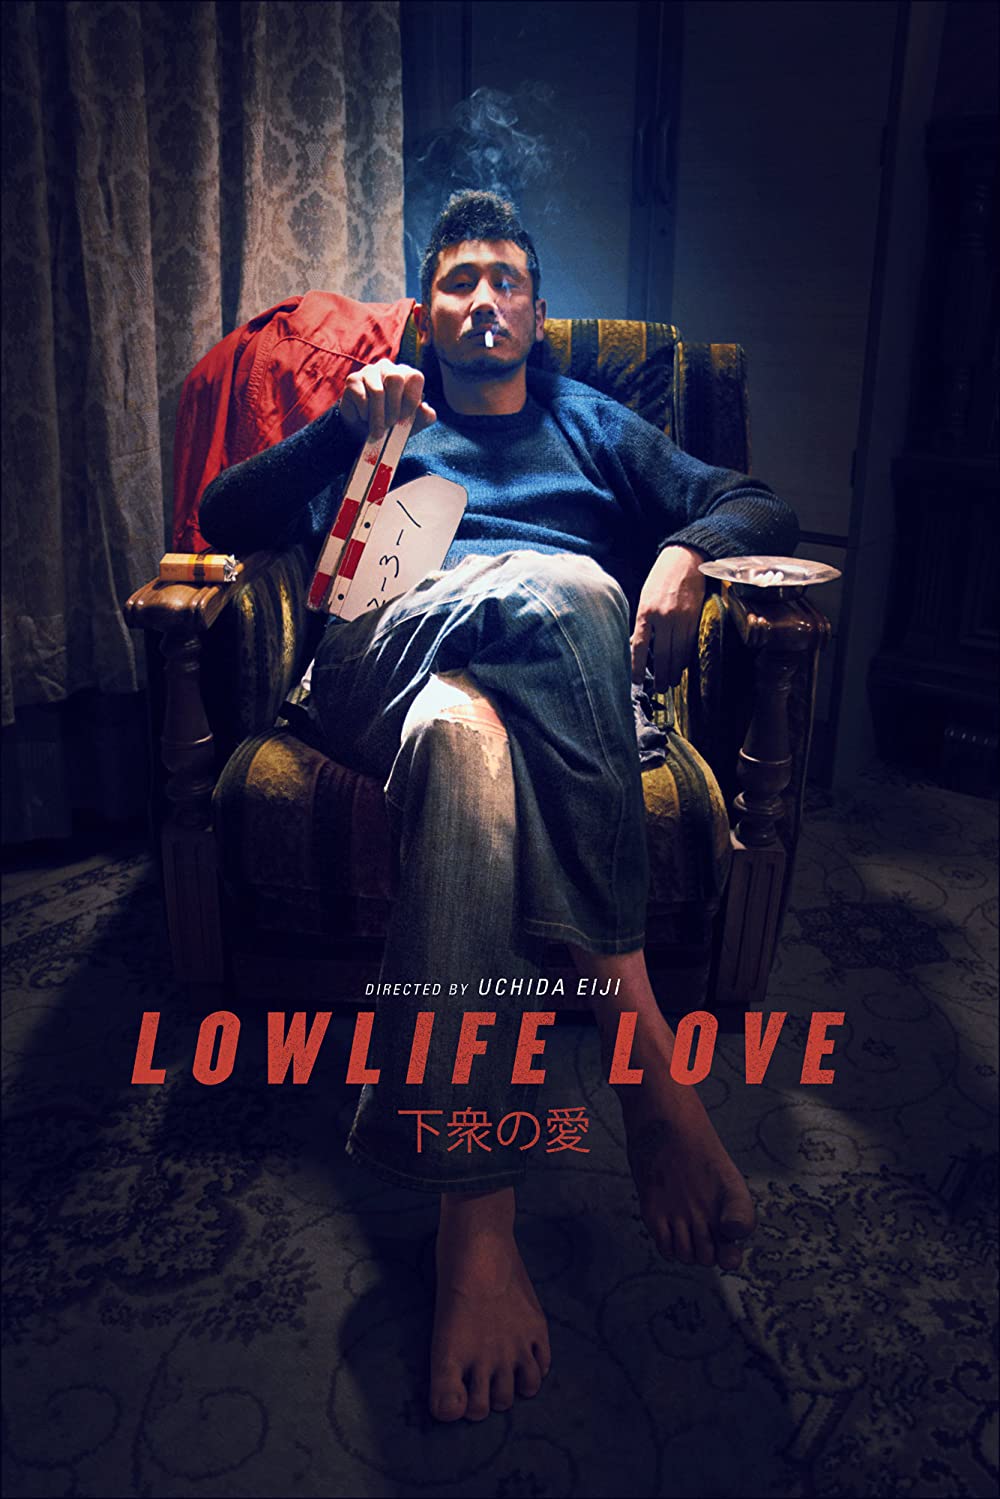 Filmbeschreibung zu Lowlife Love